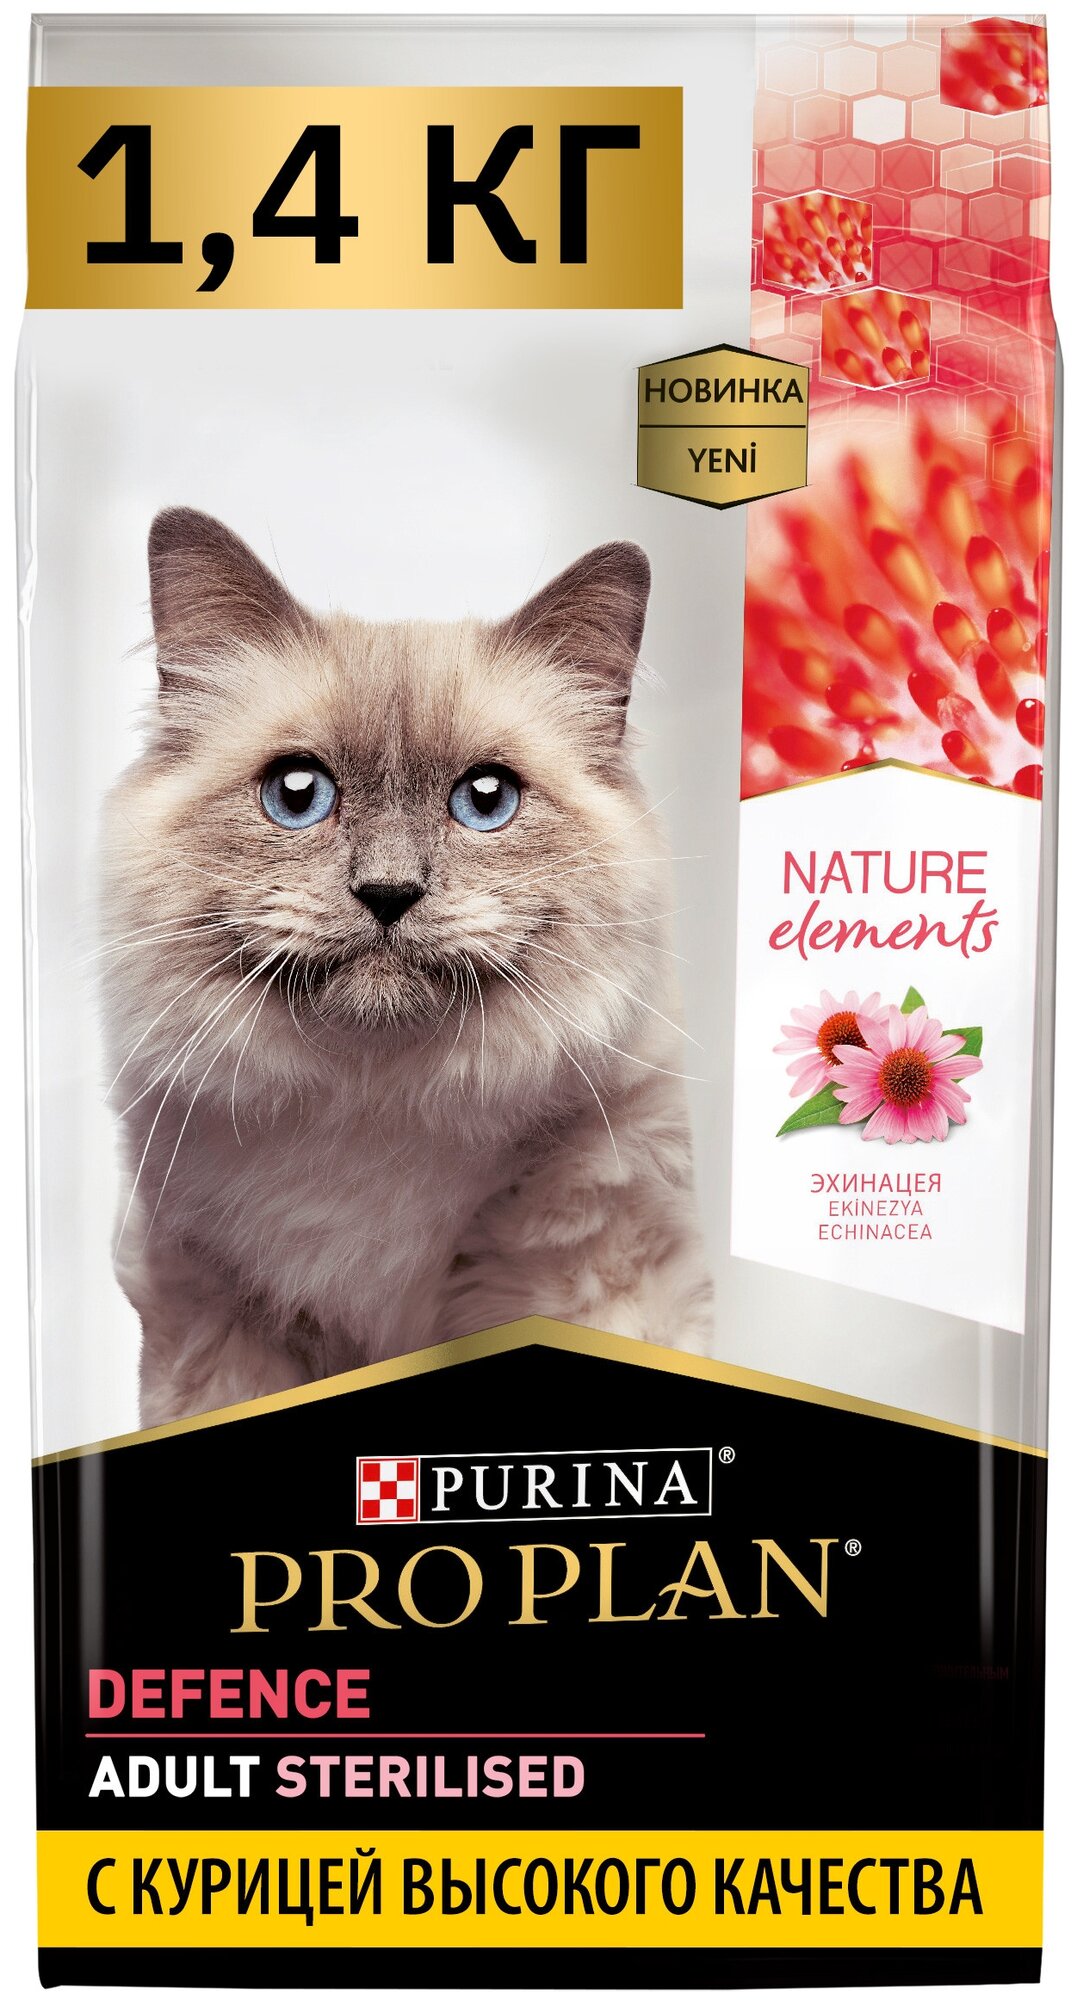 Pro Plan Nature Elements корм для взрослых стерилизованных кошек и кастрированных котов Курица, 1,4 кг.